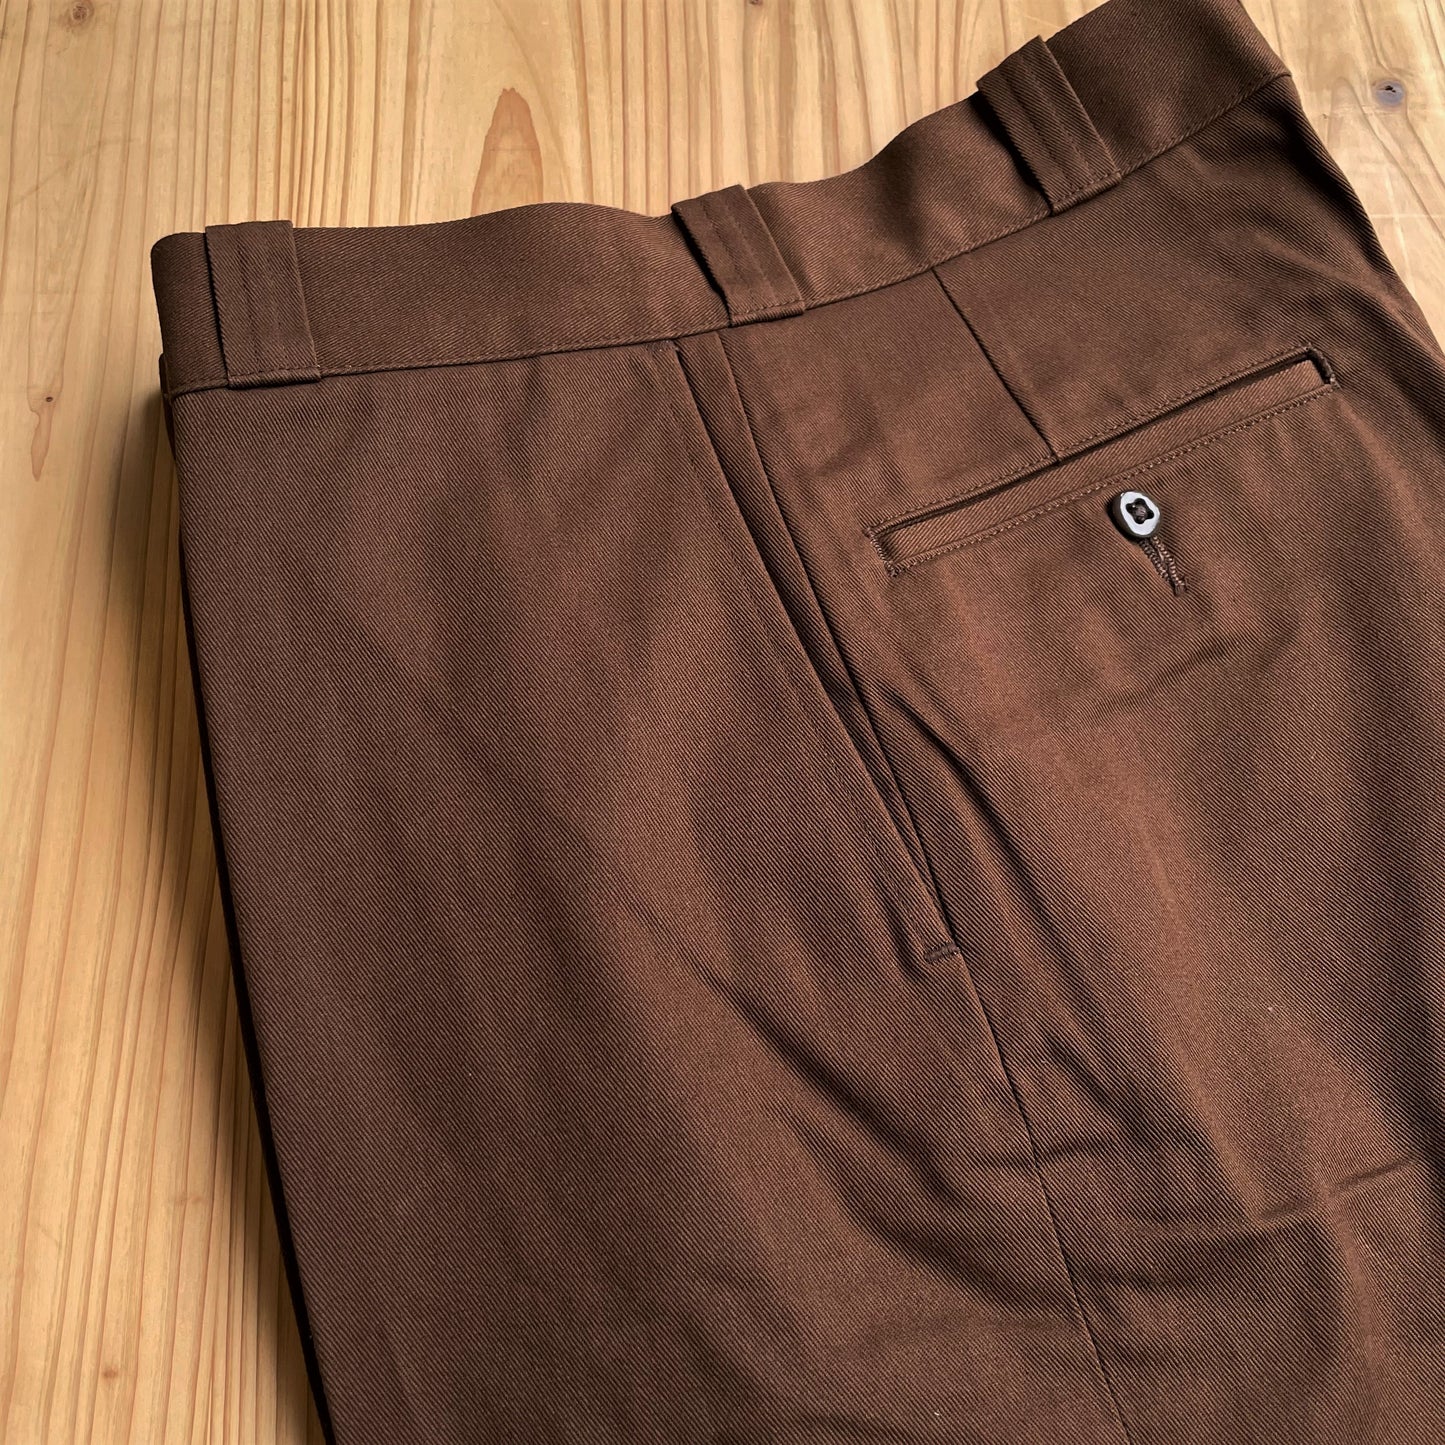 Yankshire M1963 pantalon chino